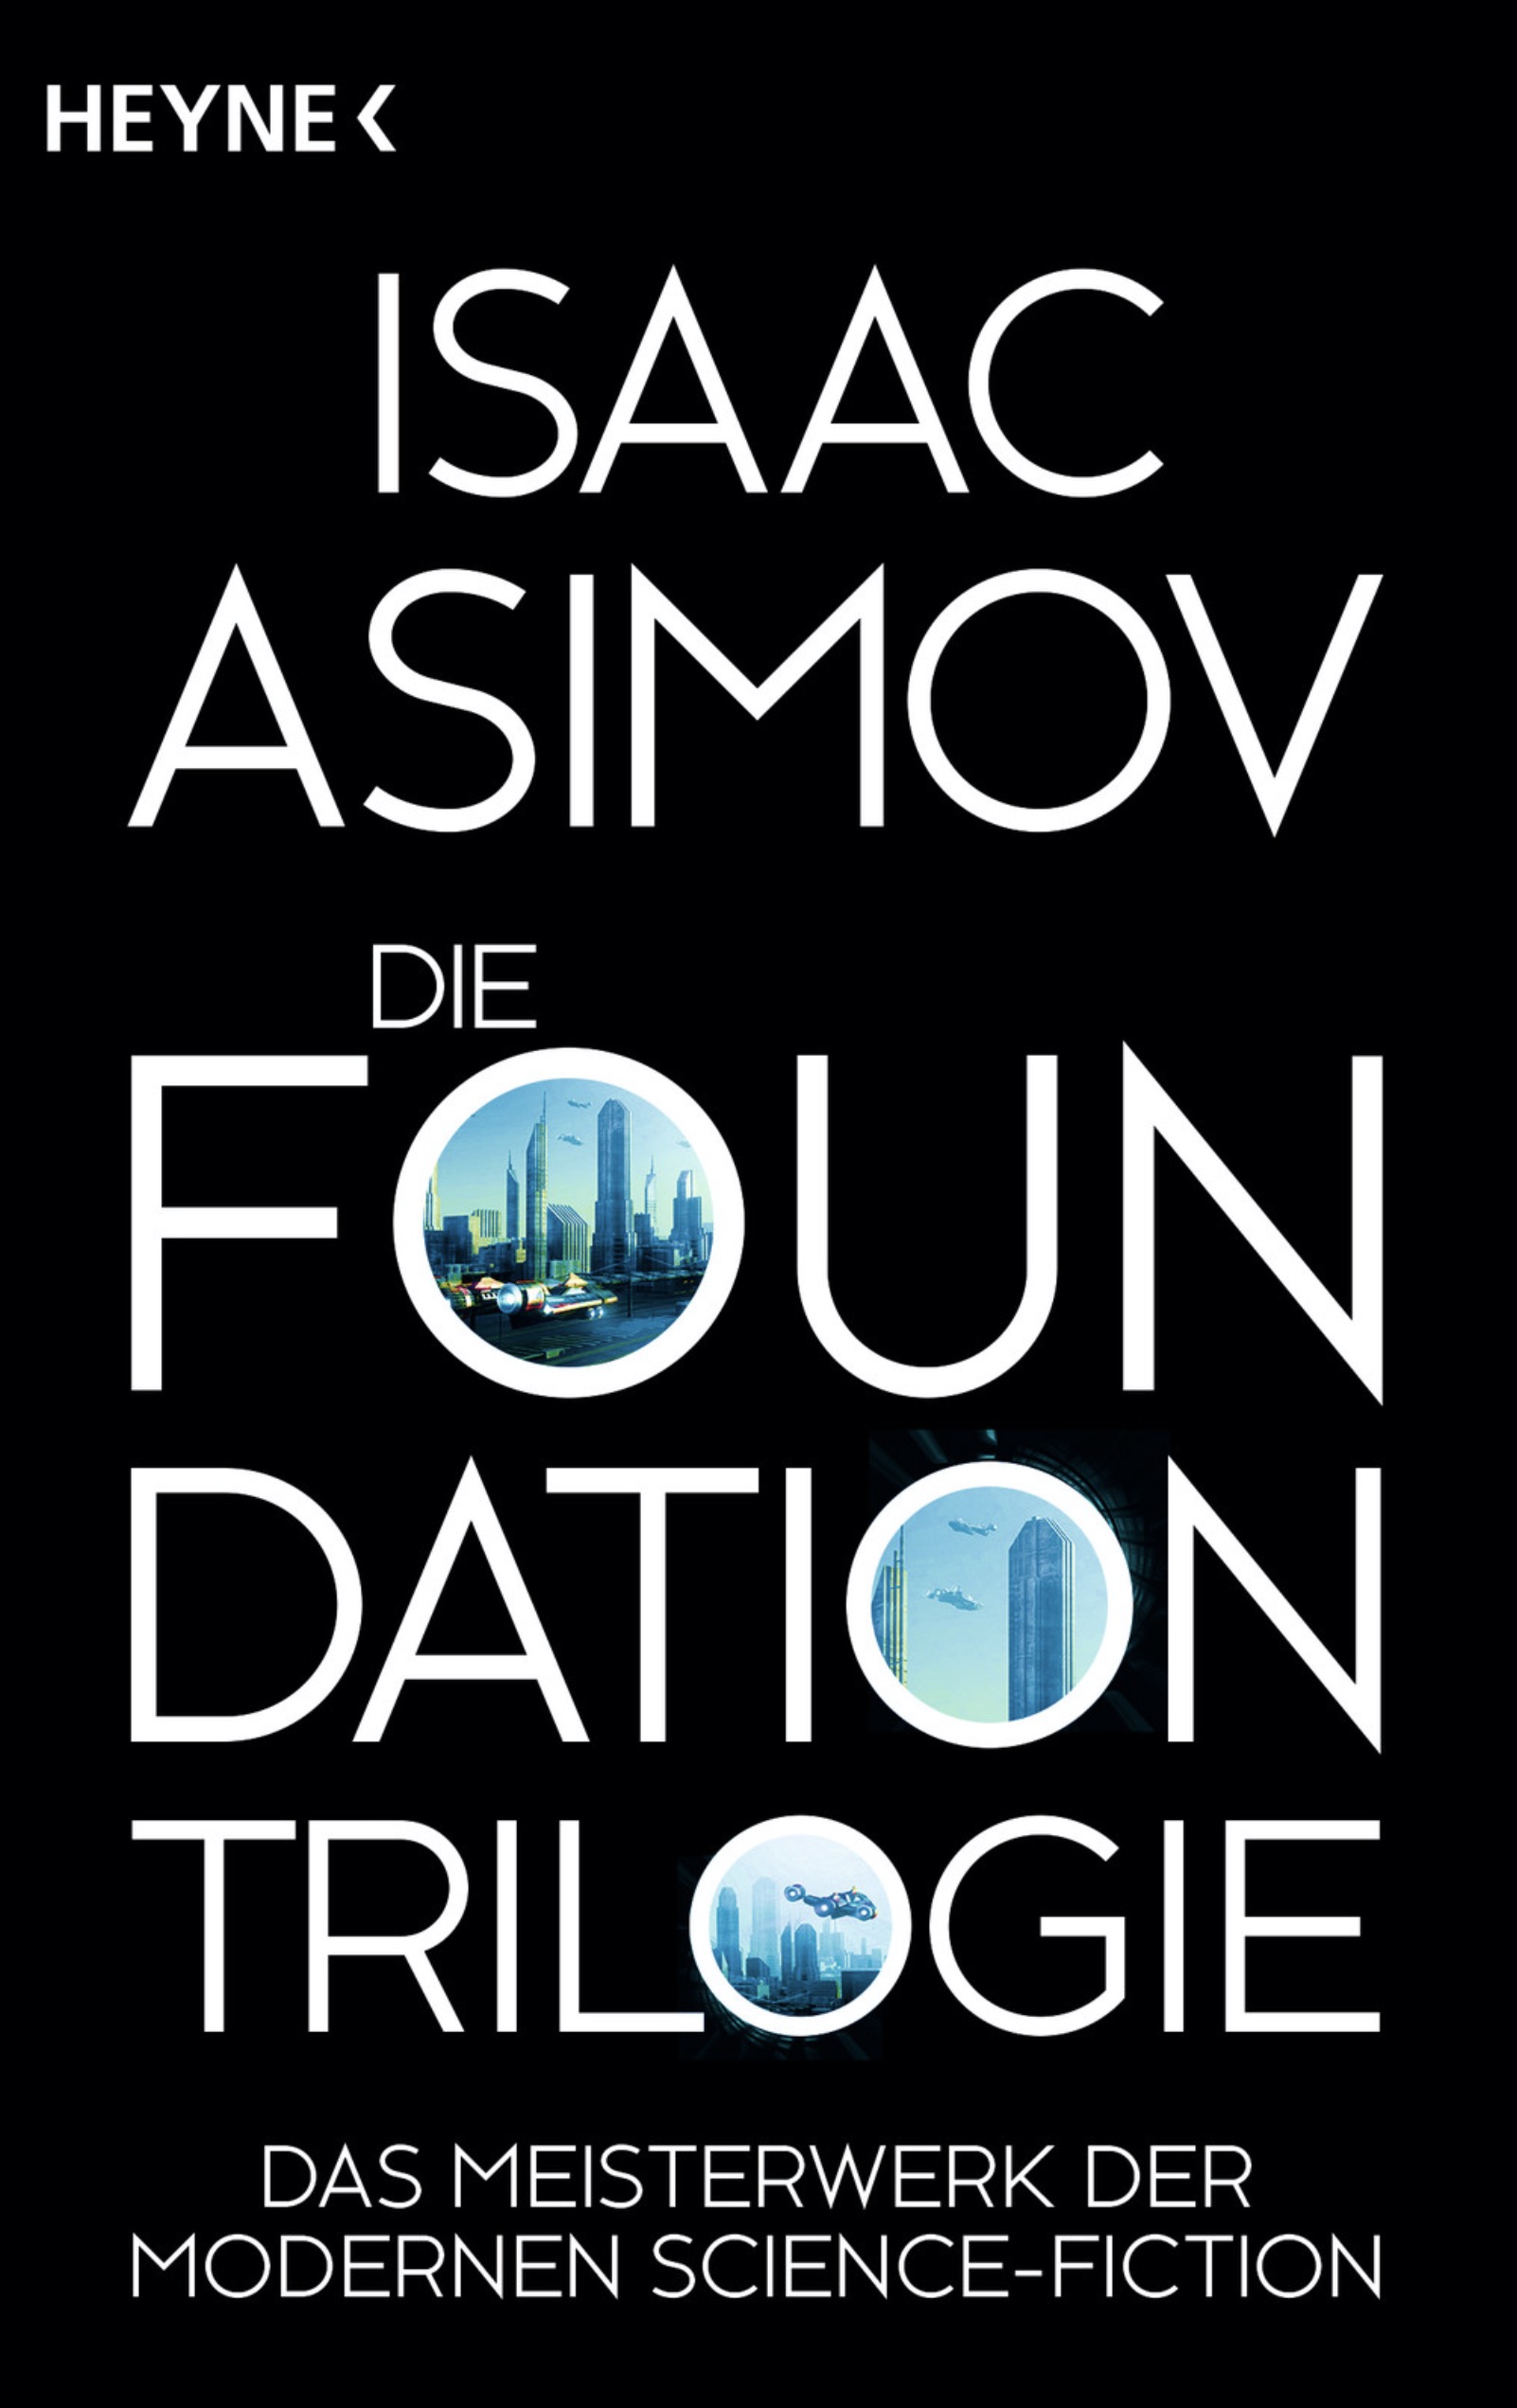 Isaac Asimov – Die Foundation-Trilogie, erschienen im Heyne-Verlag